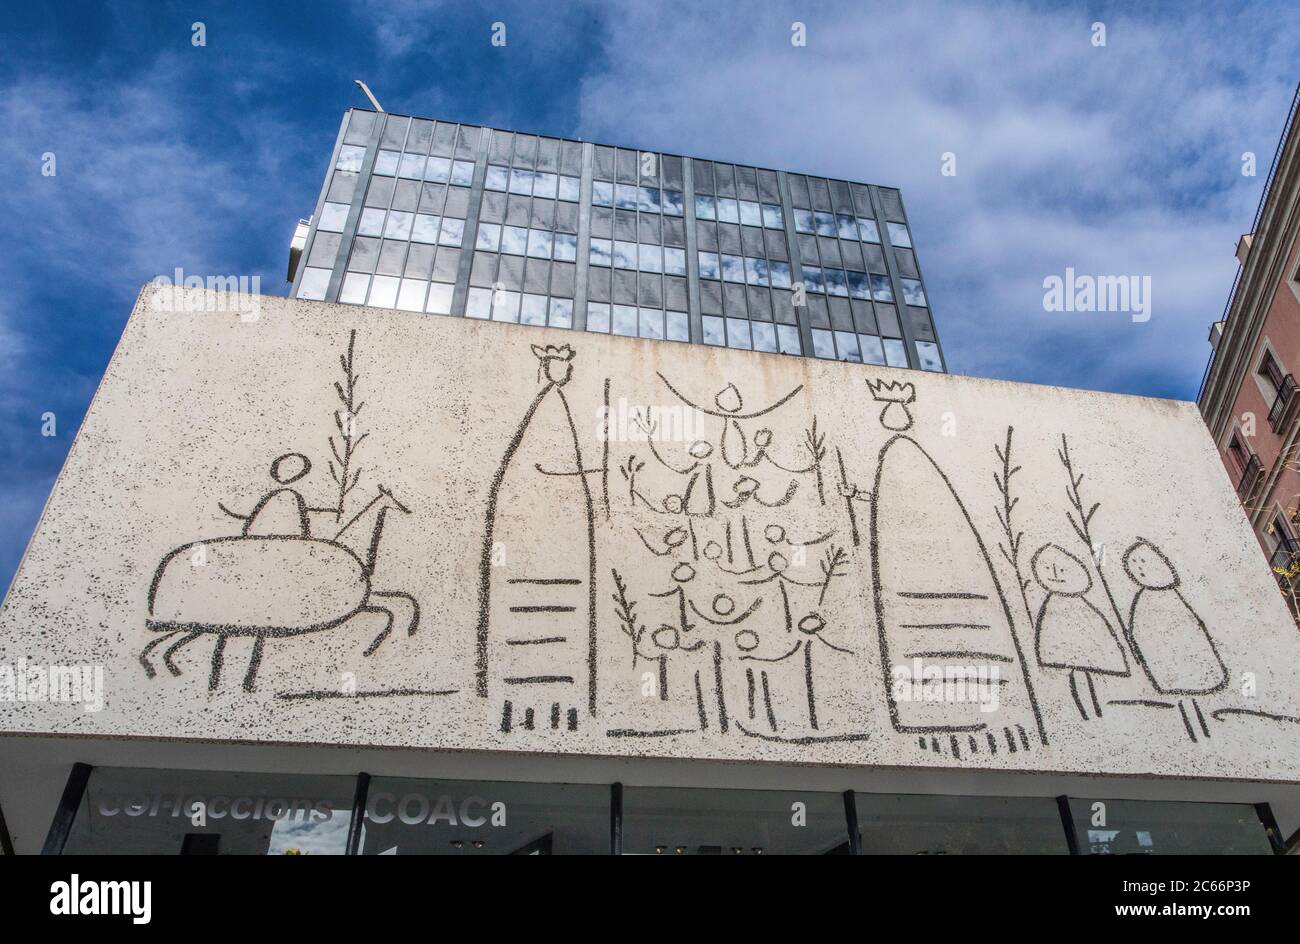 Barcelona City, Ciutat Vella, Picasso Mural, Spain Stock Photo